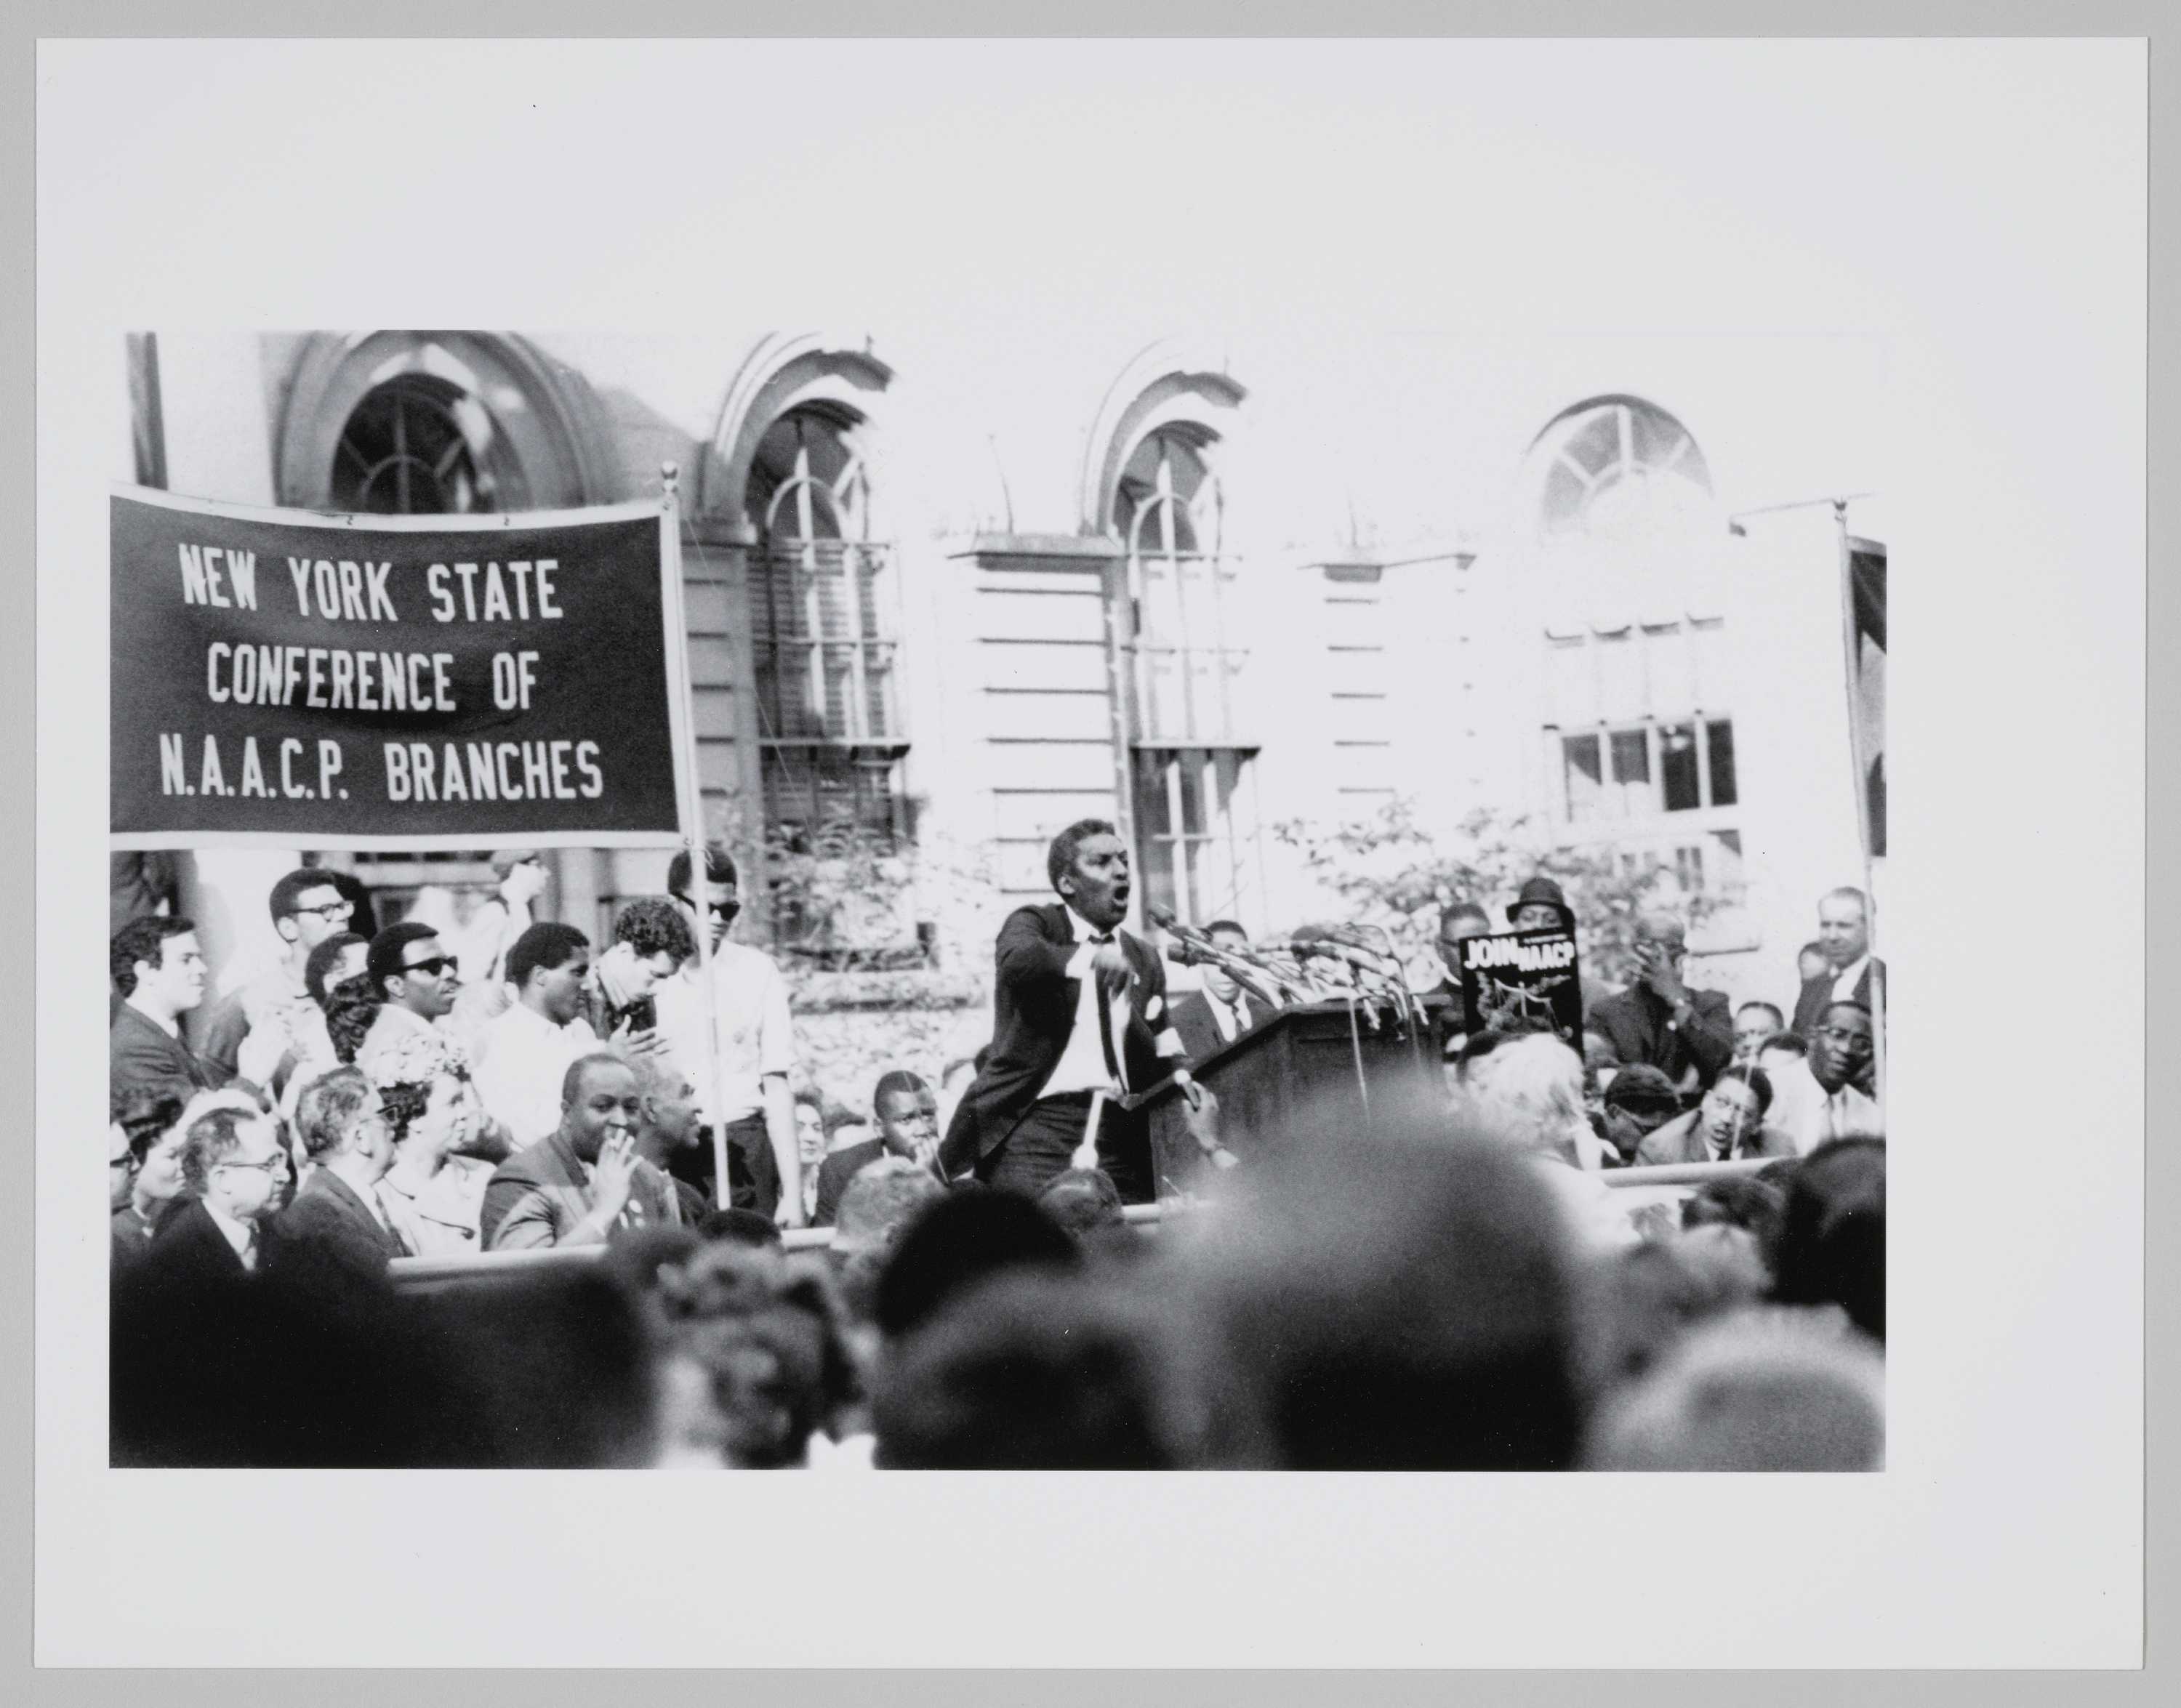 Bayard Rustin at the NAACP Conference